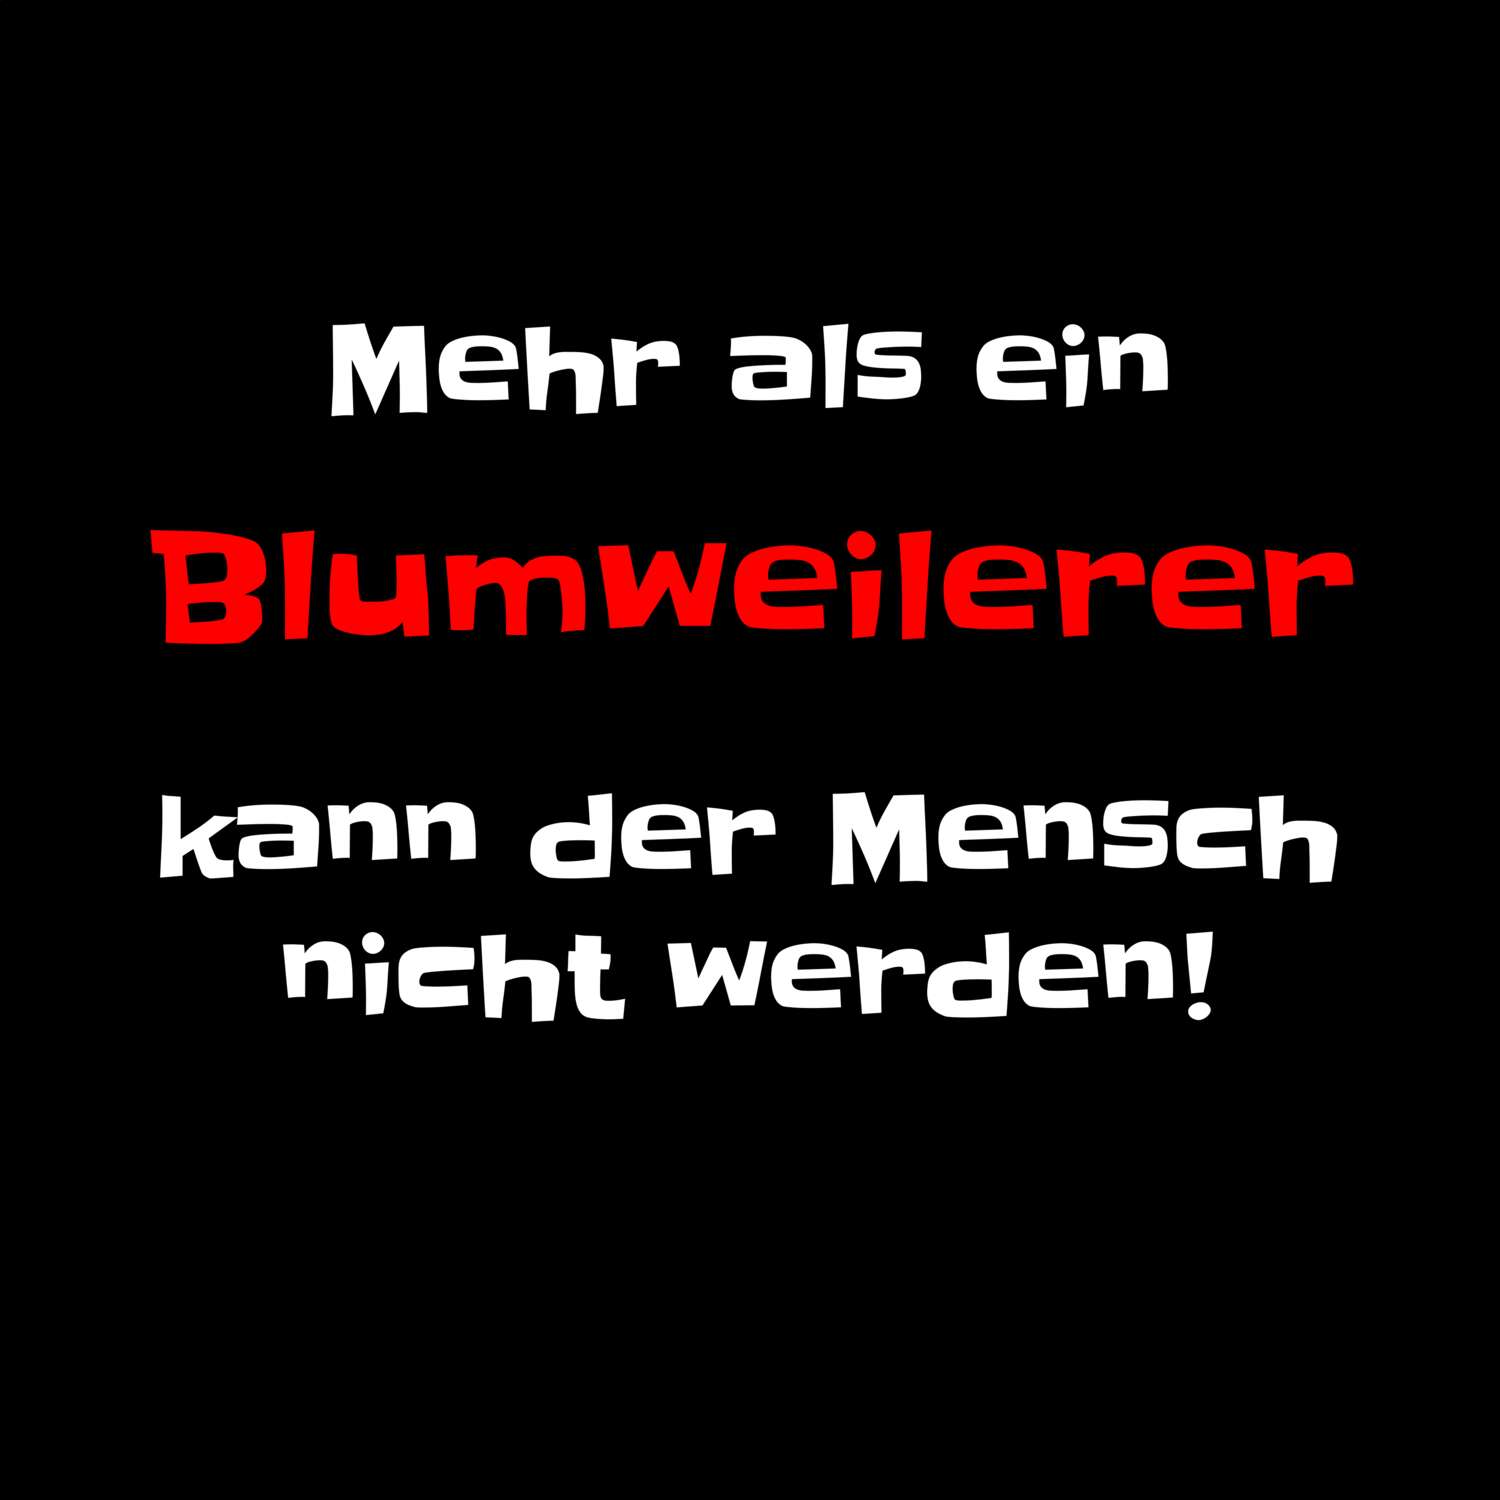 Blumweiler T-Shirt »Mehr als ein«